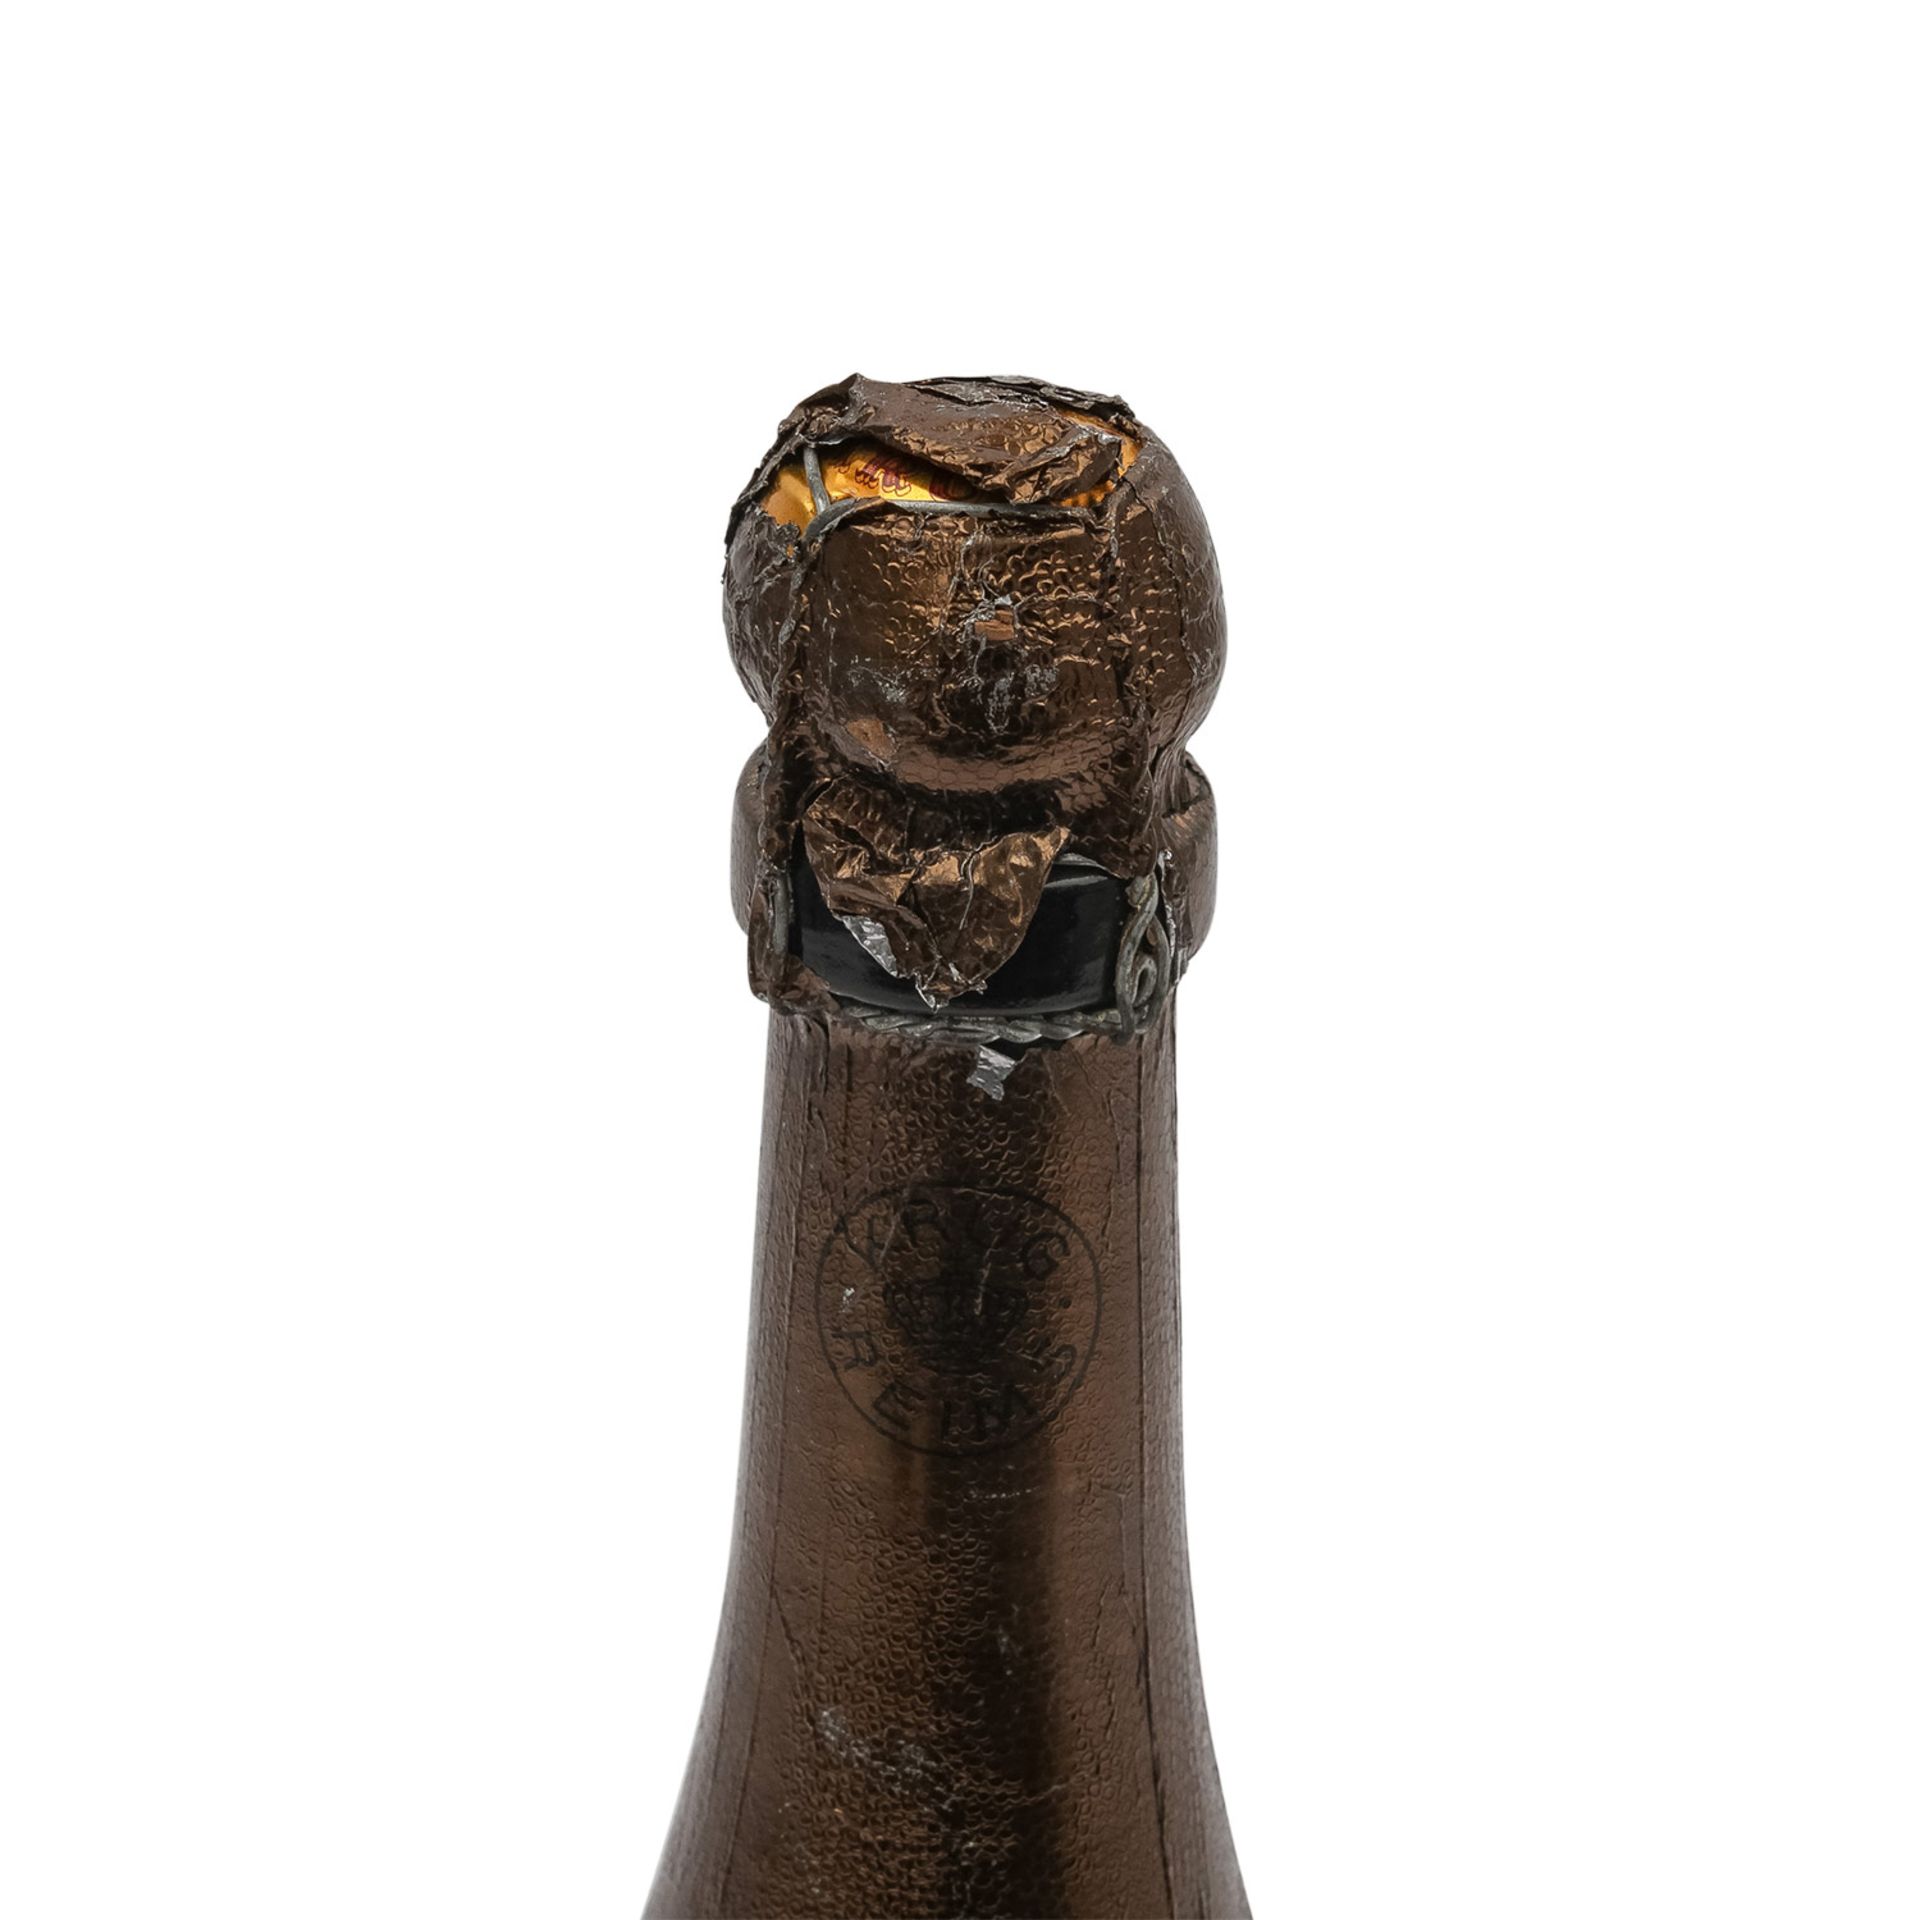 KRUG Champagne Brut, Magnumflasche, Vintage 1973Reims, Frankreich, Rebsorte: Champagne Blend, 12, - Image 6 of 6